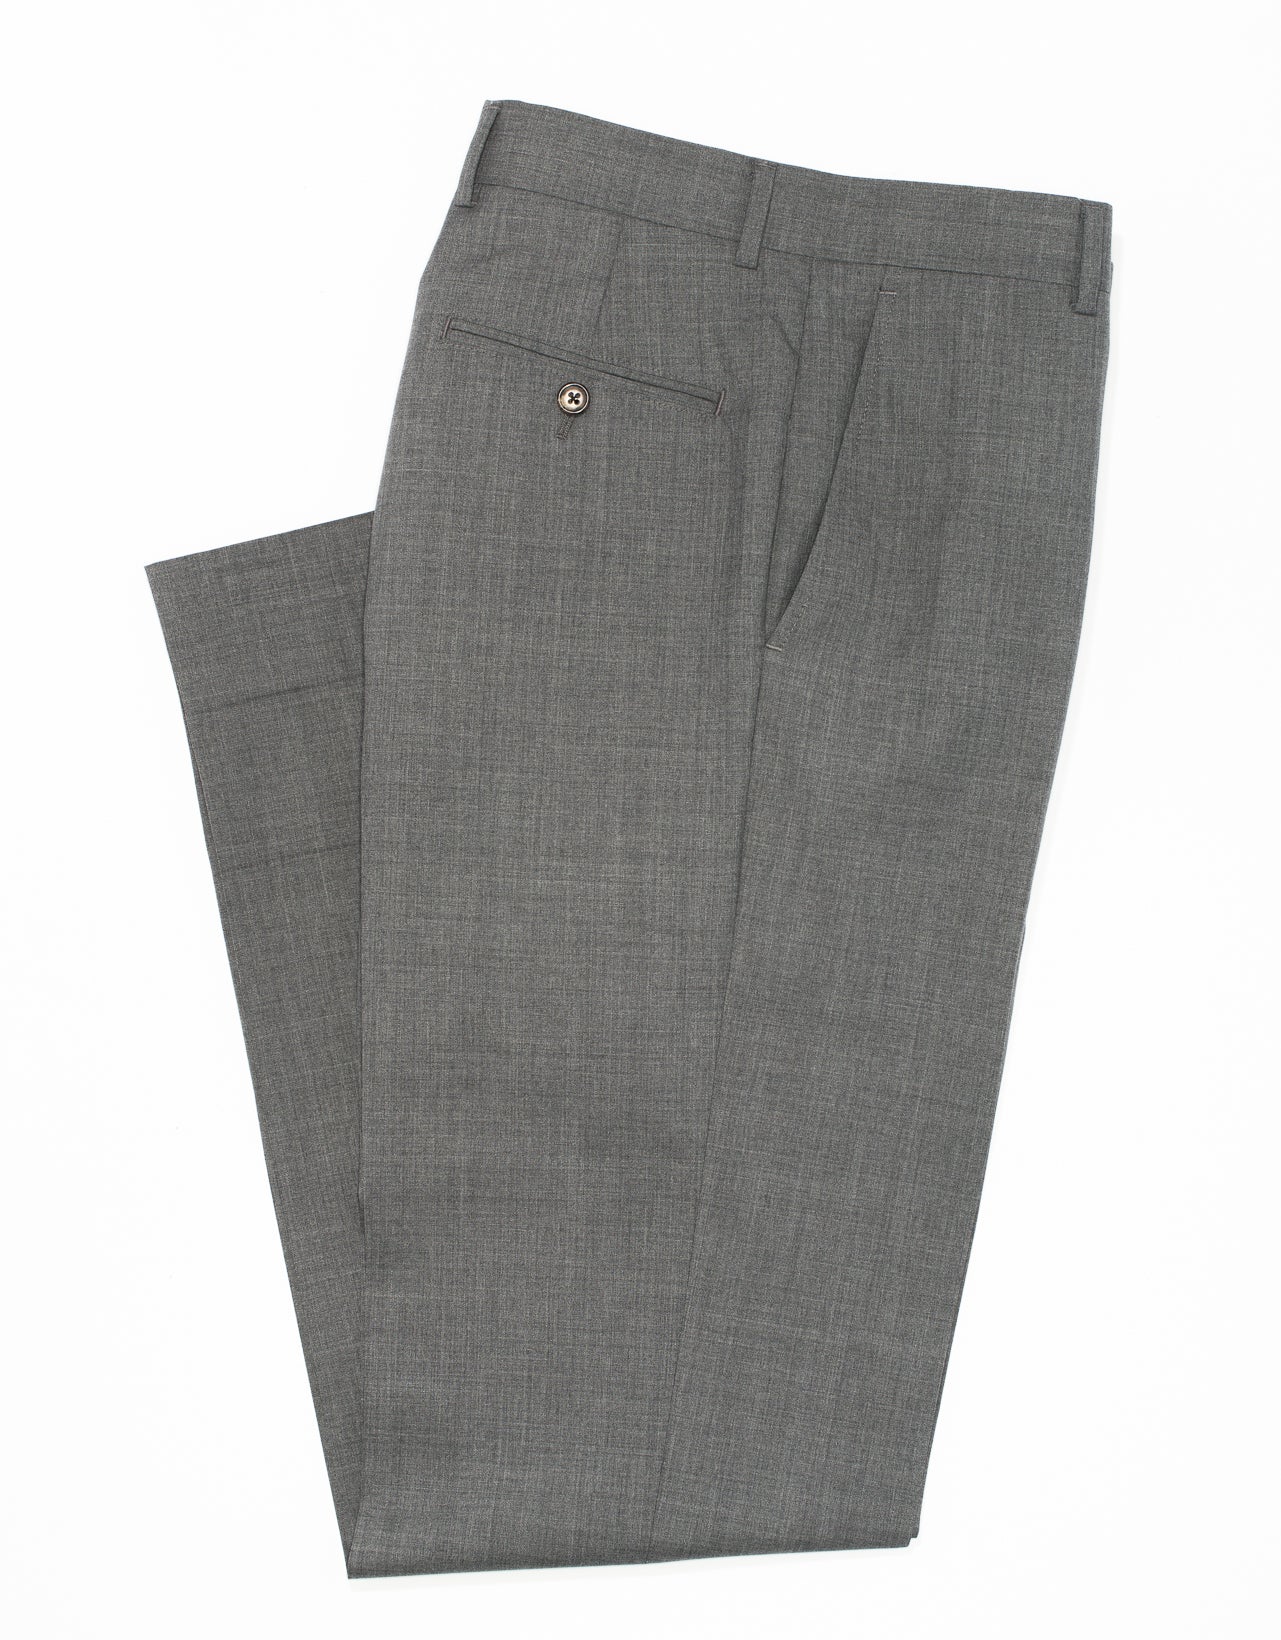 Tropical Wool Dress Trousers - Grey | J. Press – J. PRESS